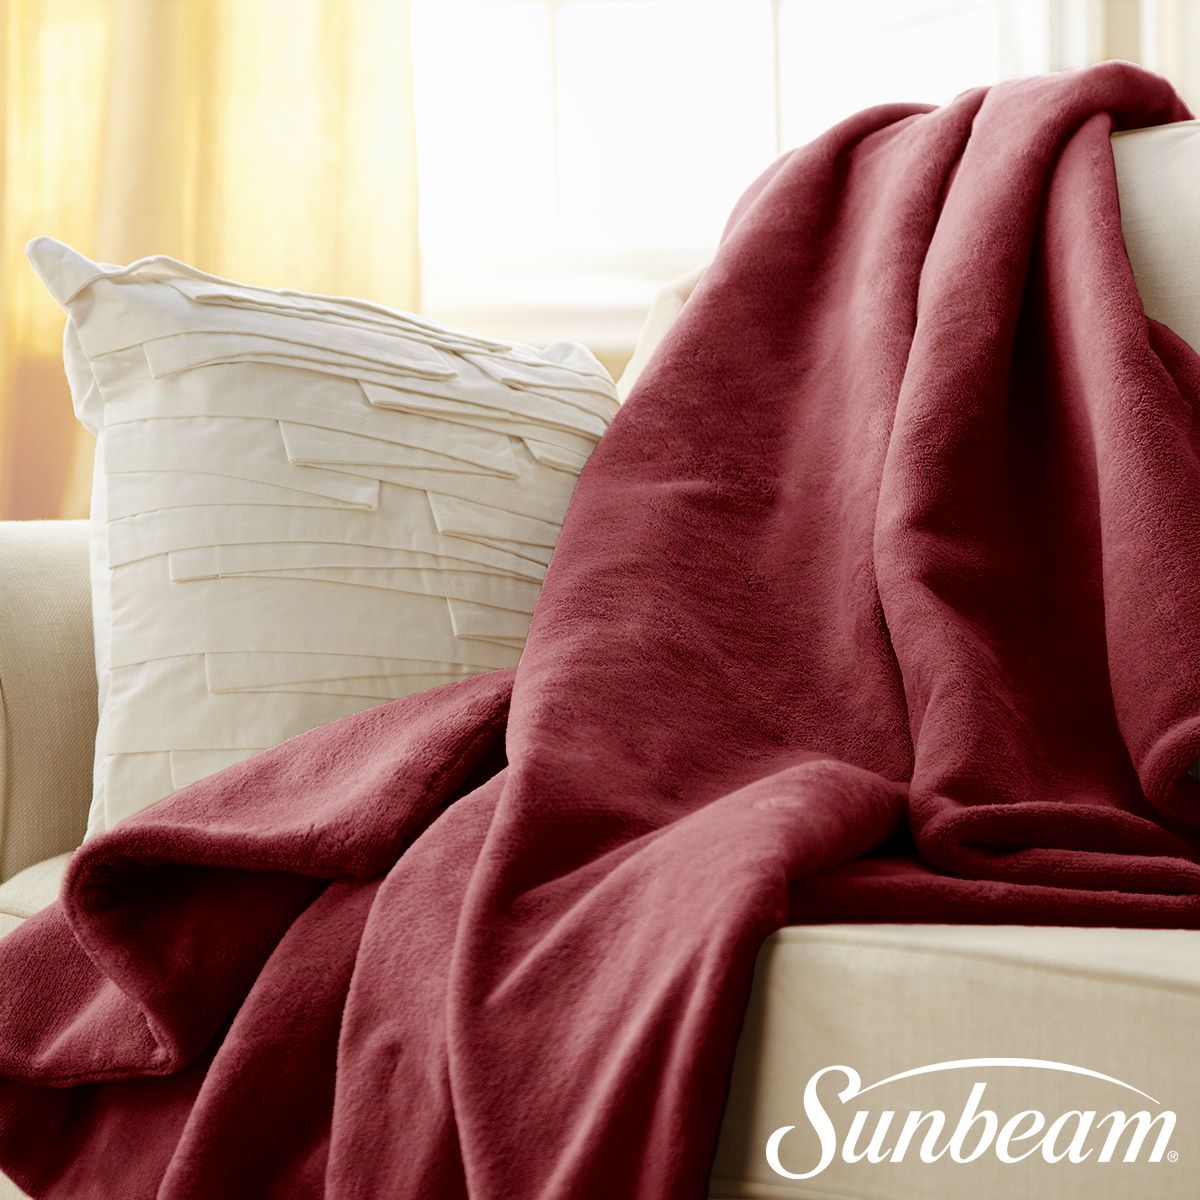 sunbeam heated blanket